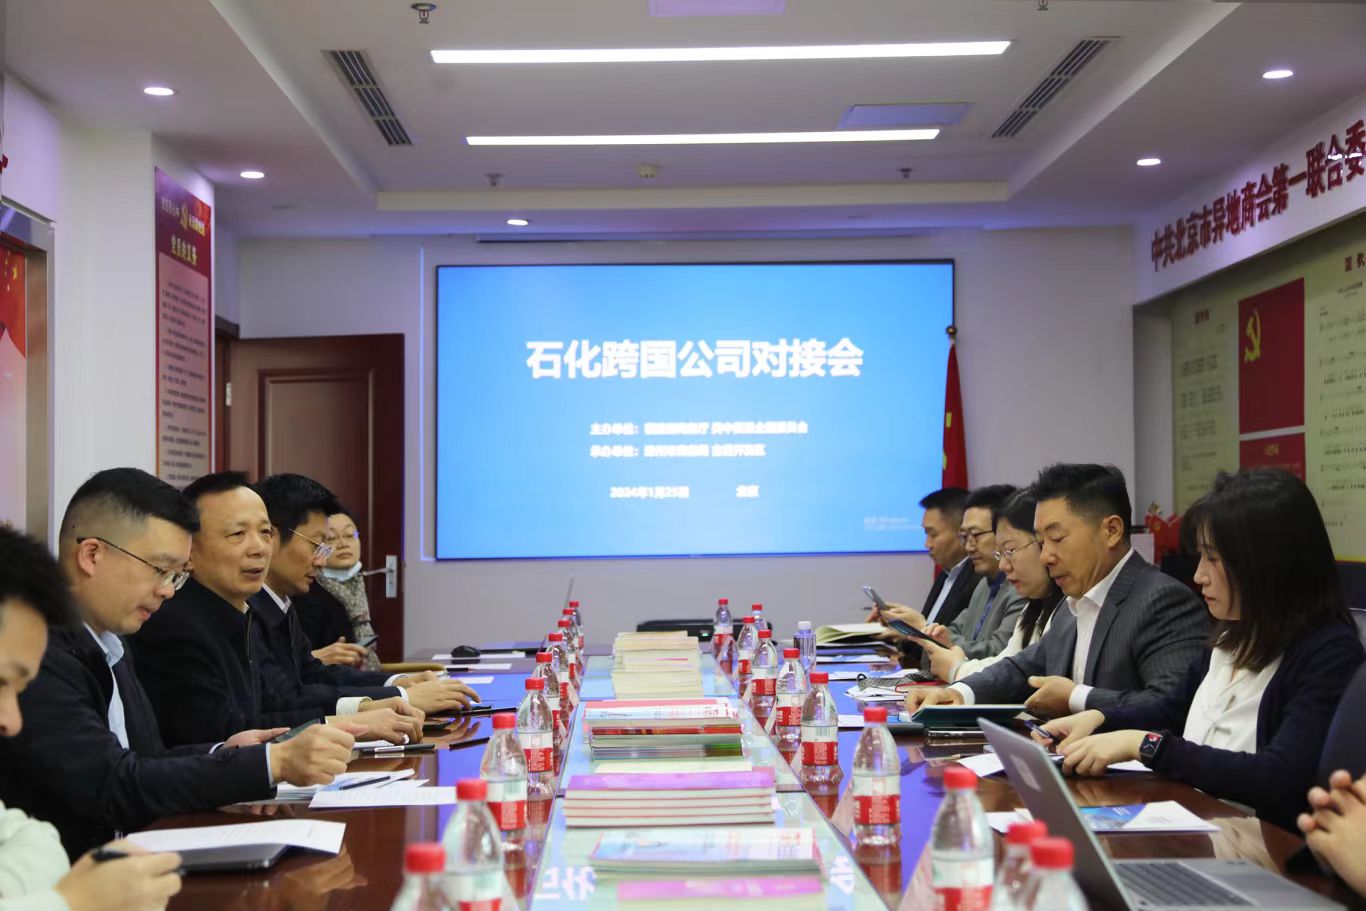 福建省商务厅组织举办石化跨国公司项目对接会